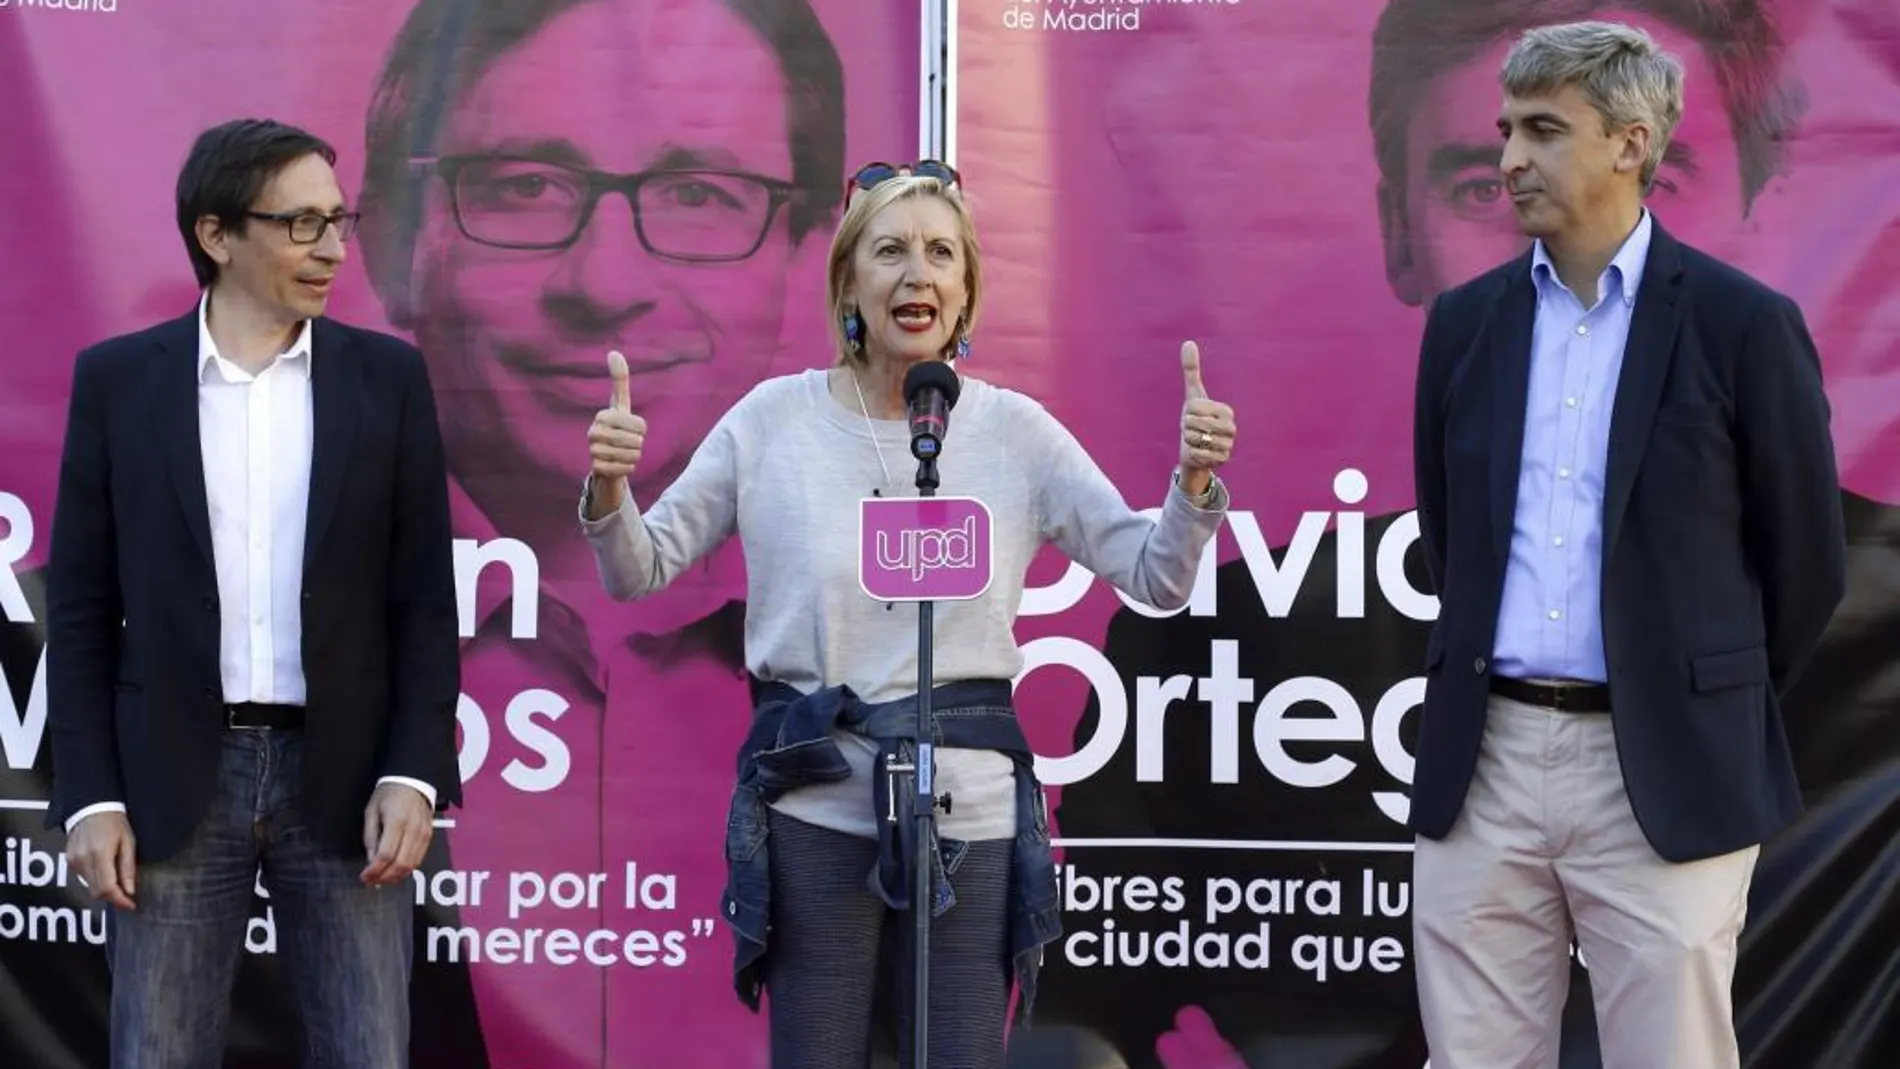 La líder de UPyD, Rosa Díez junto a los candidatos a la Comunidad de Madrid, Ramón Marcos, y al Ayuntamiento, David Ortega, durante el acto de cierre de campaña